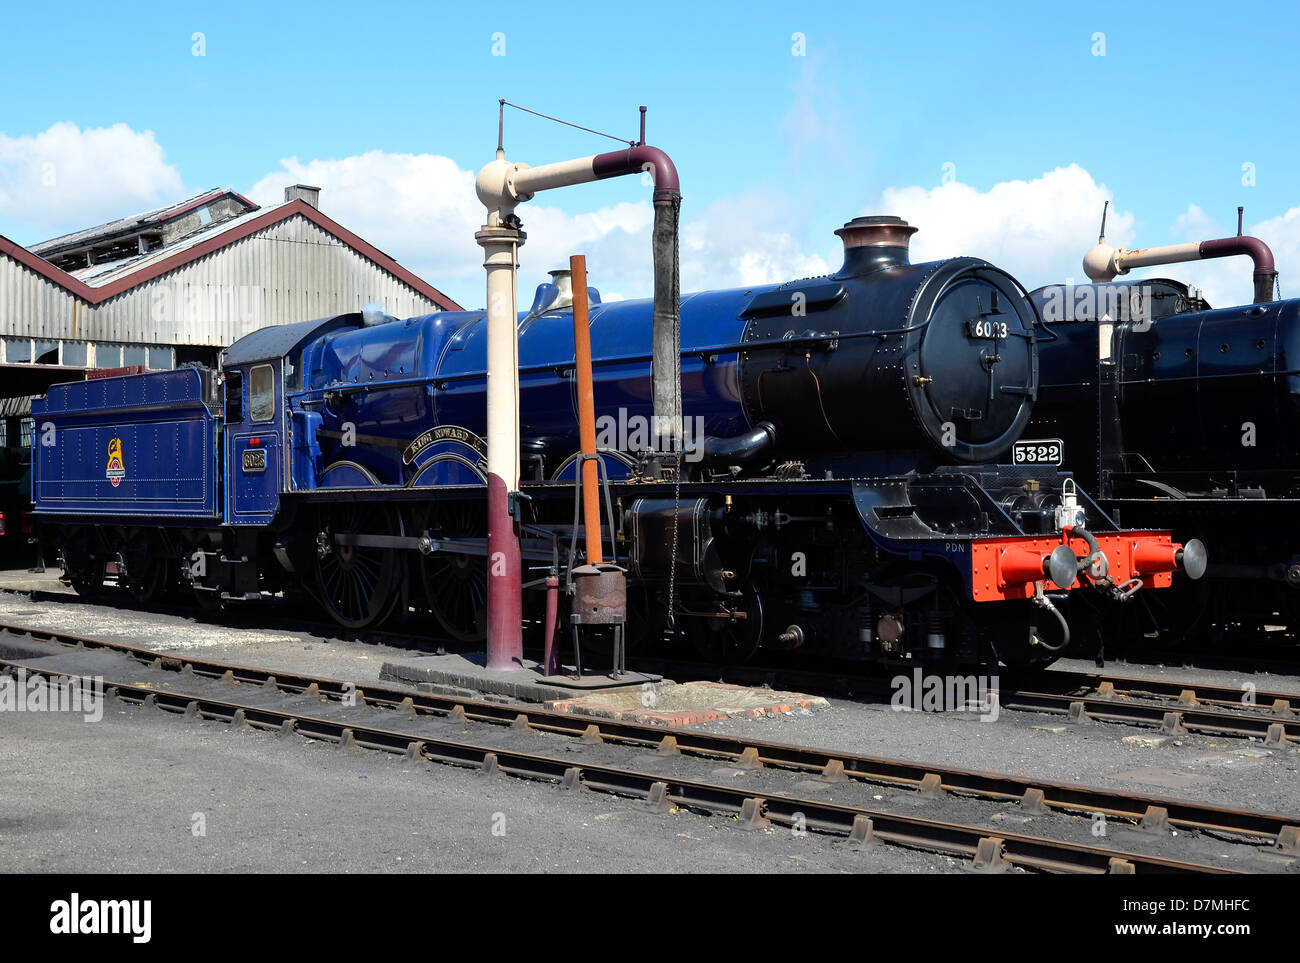 GWR re motore classe n. 6023 re Edoardo II nella sua home depot, Didcot Railway Centre. Foto Stock